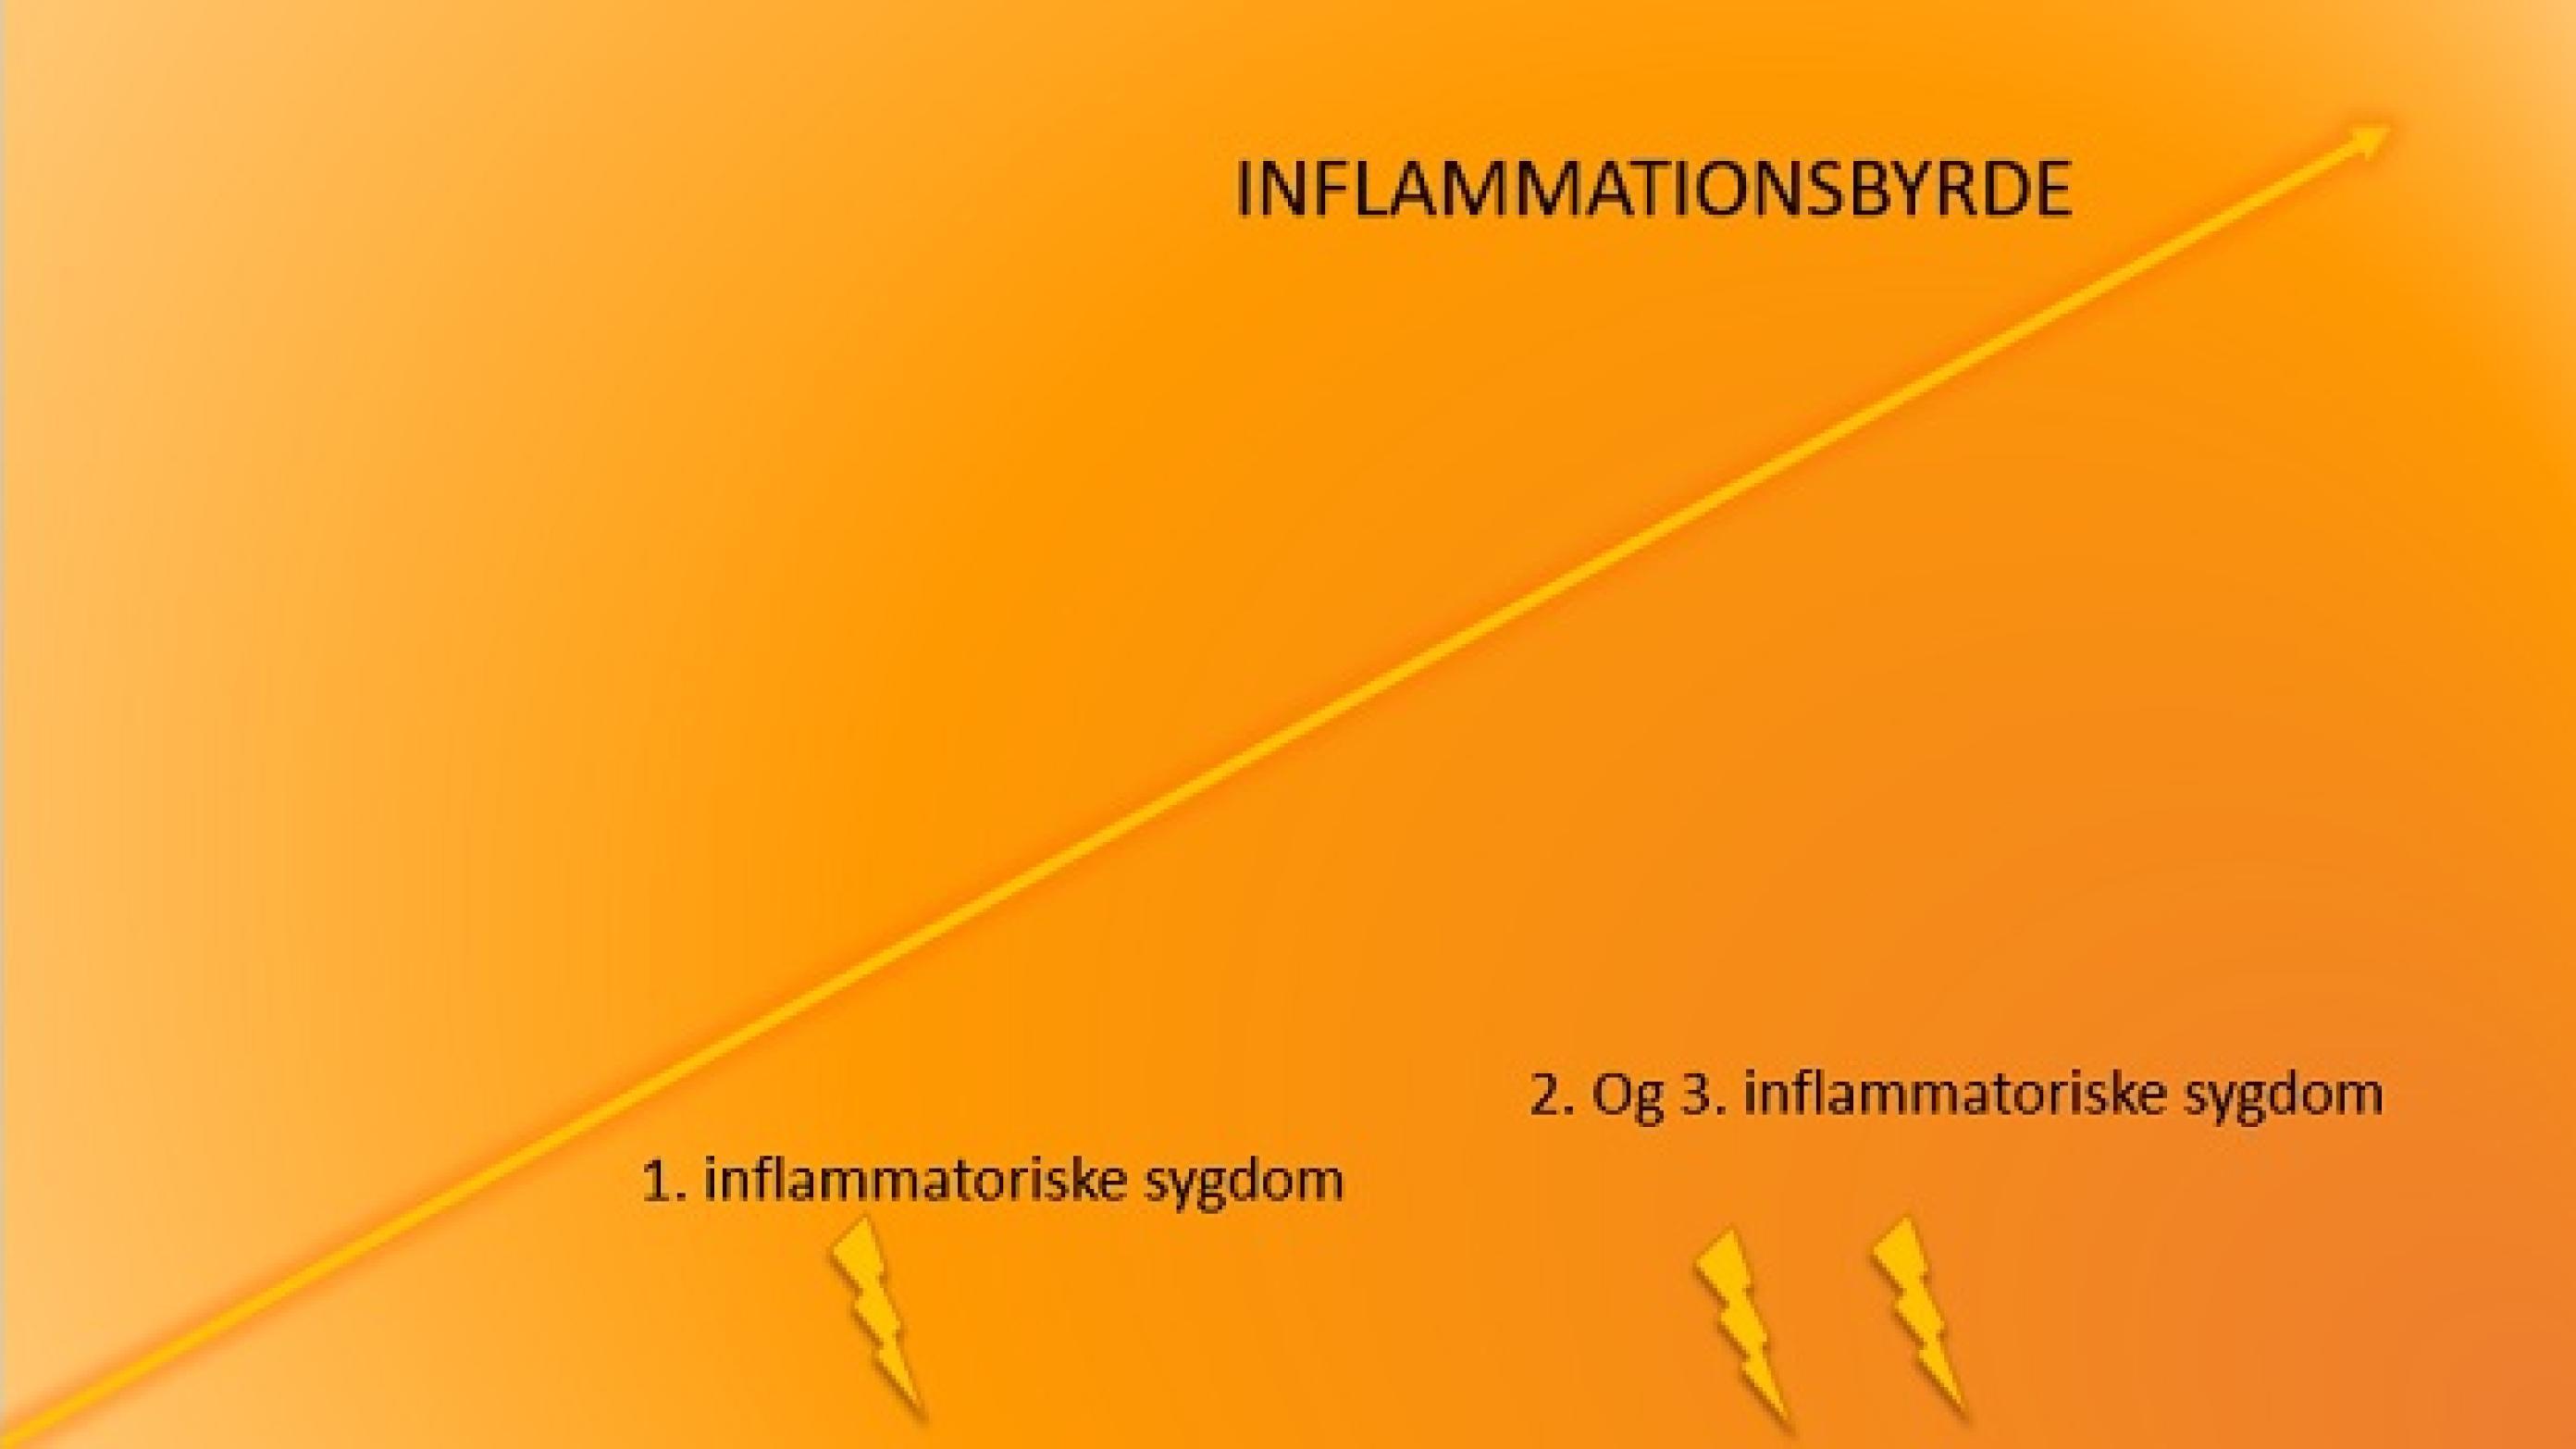 En kontinuerlig tilstedeværelse af inflammation og deraf øgning af inflammationsbyrden øger muligvis risikoen for udvikling af flere inflammatoriske medierede sygdomme.